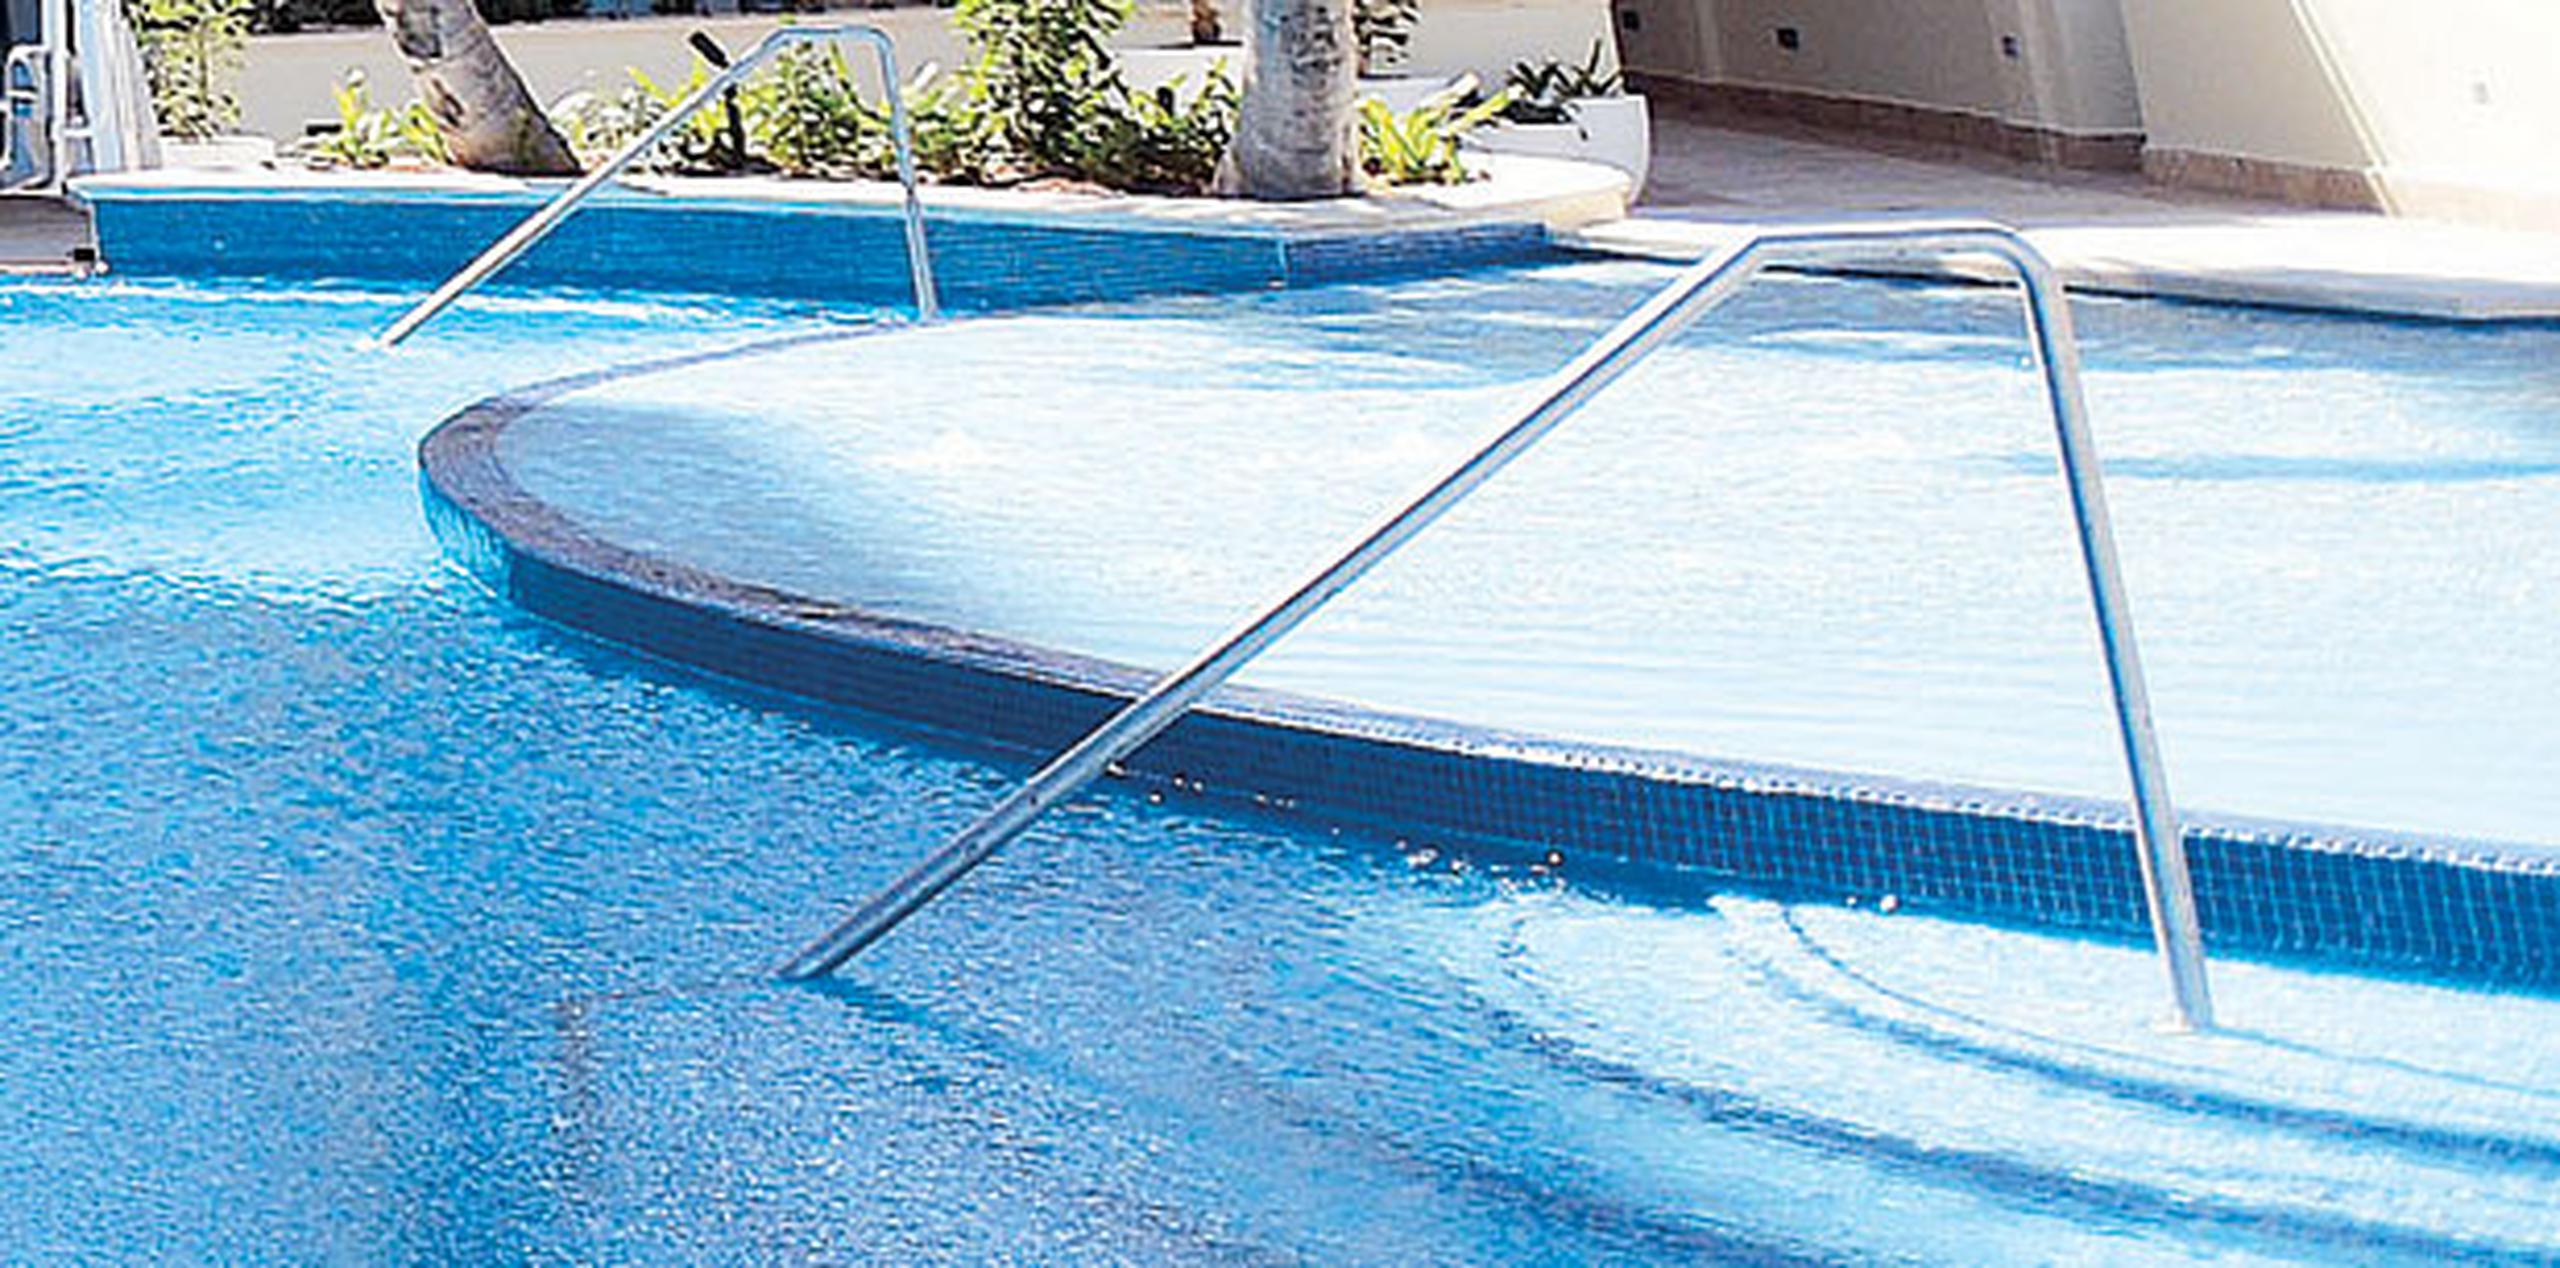 Las autoridades insisten todos los años en la importancia de extremar las medidas de seguridad con la construcción de vallas en las piscinas privadas. (Archivo)